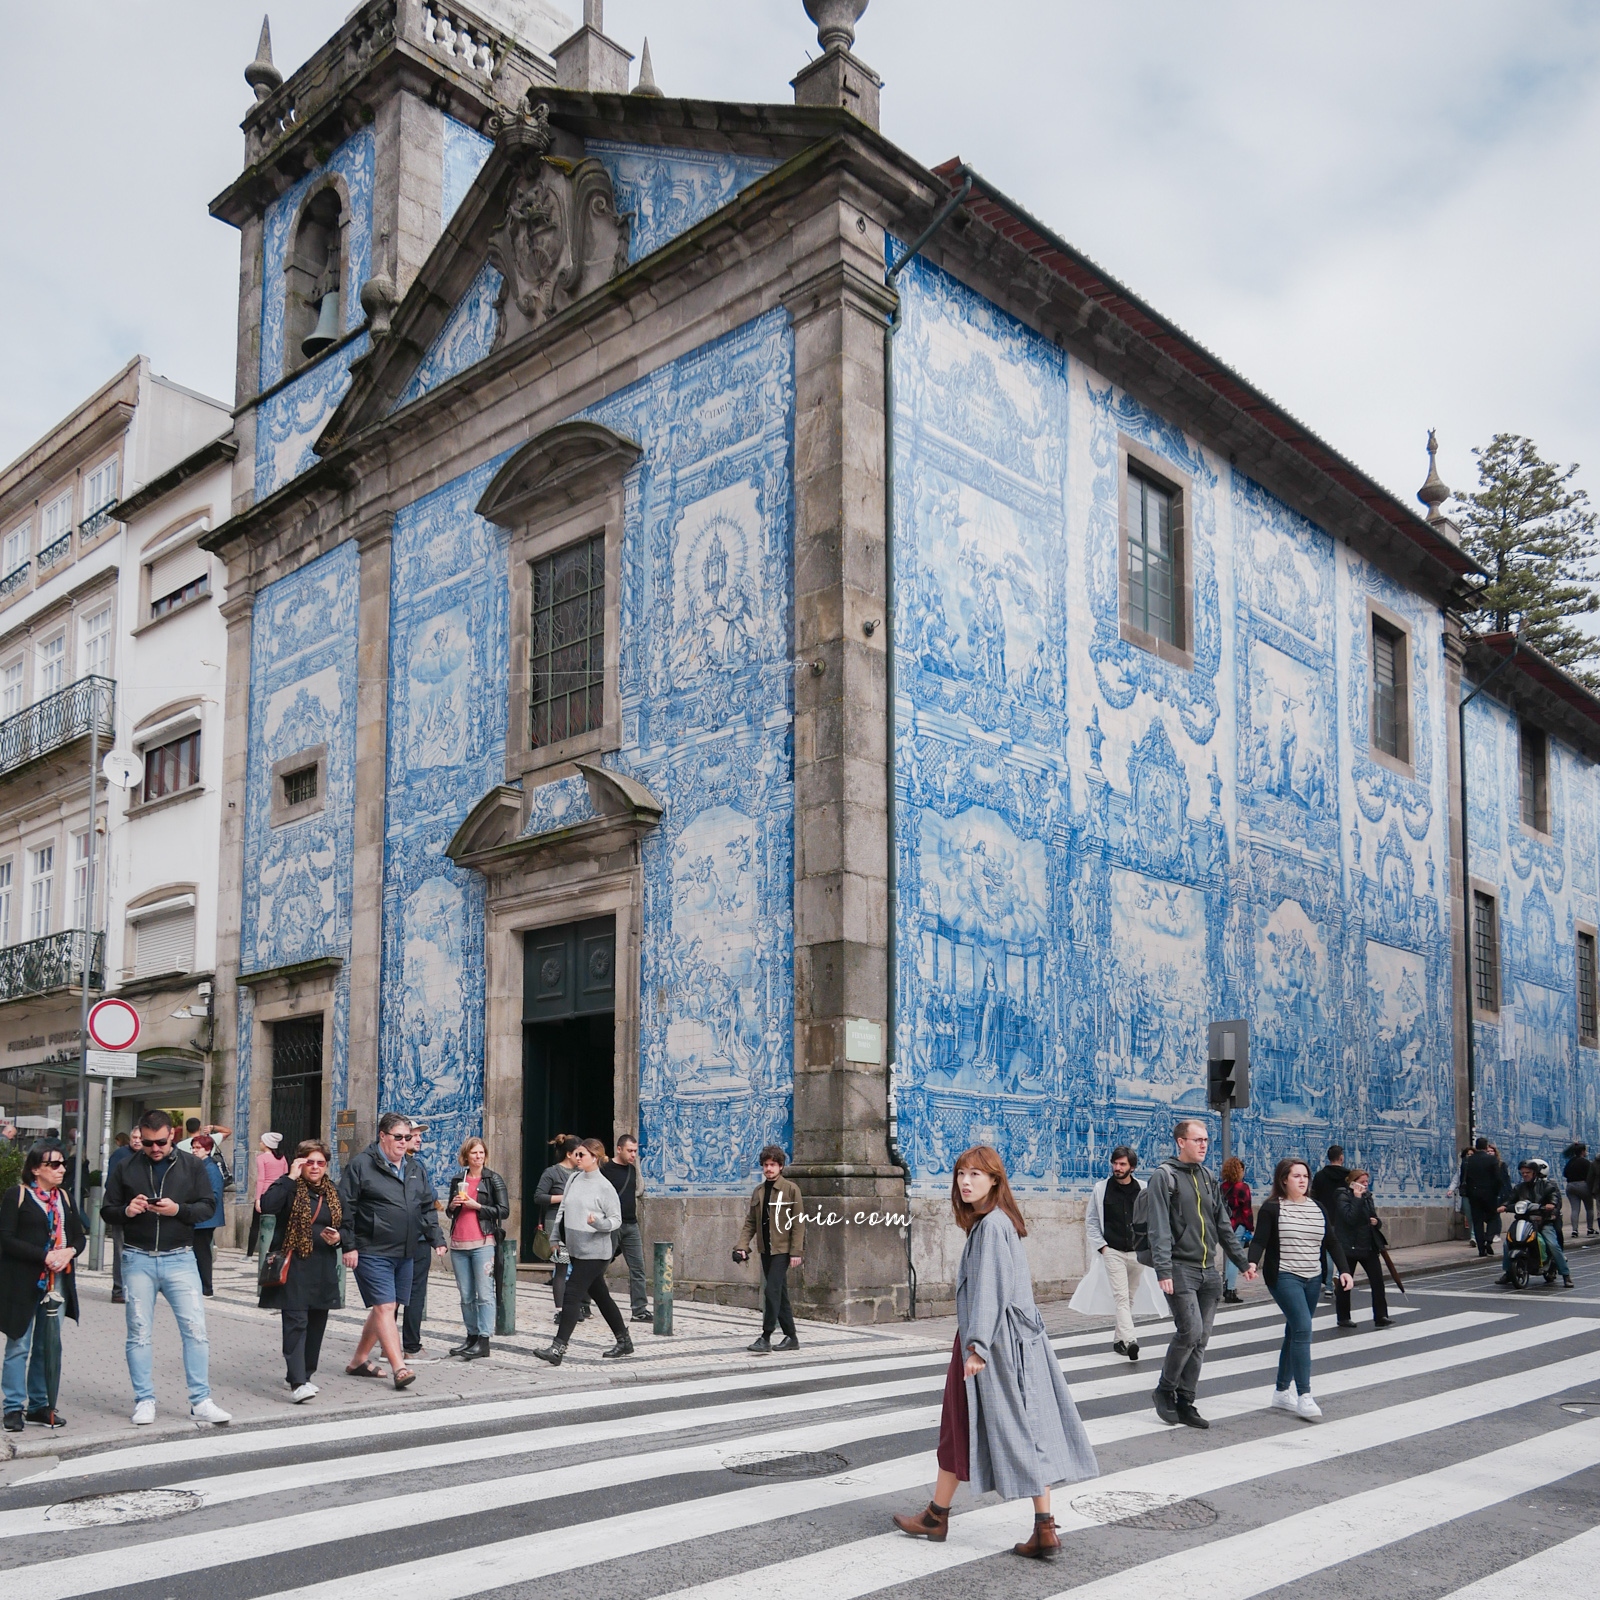 葡萄牙波多景點 Capela das Almas 阿瑪斯教堂 18 世紀藍白瓷磚彩繪教堂